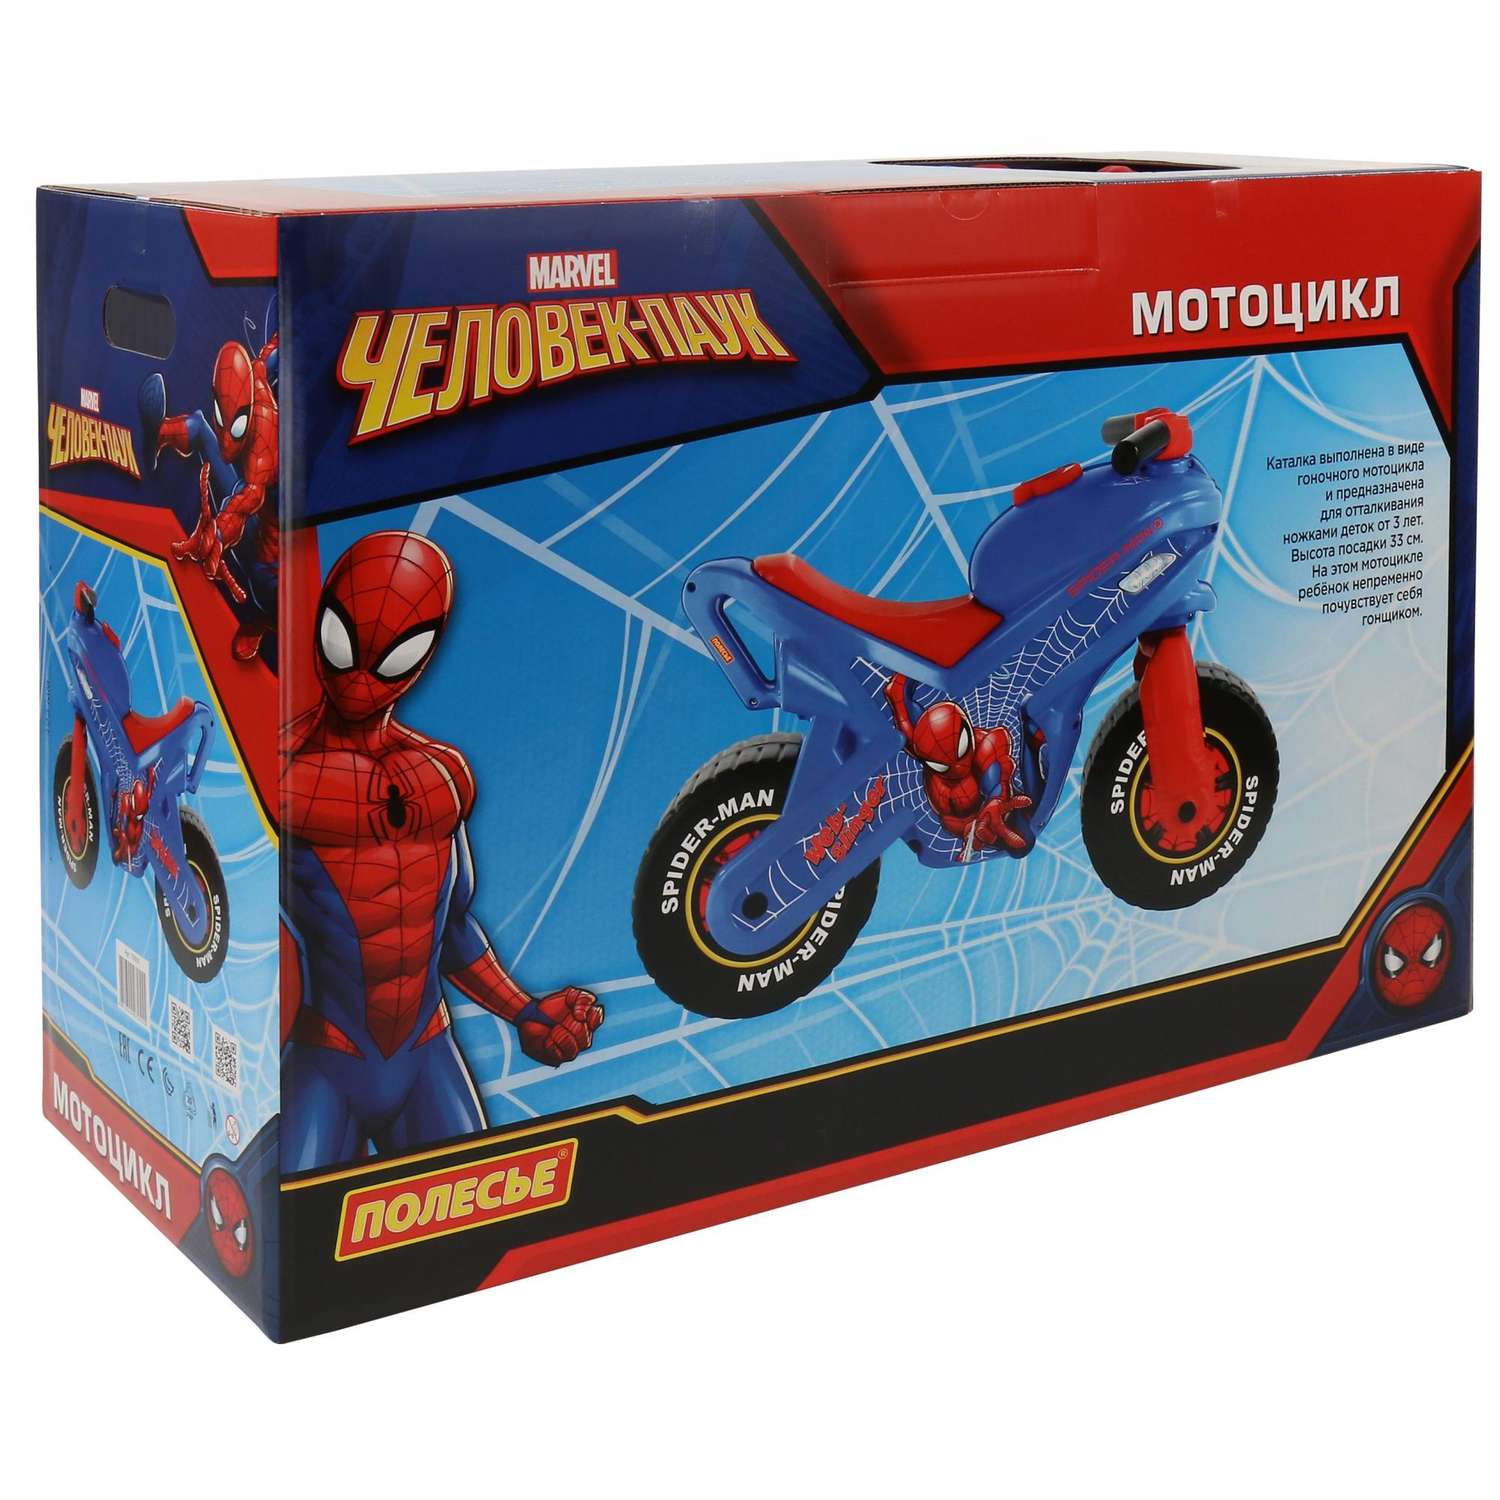 Каталка Полесье Marvel Человек-паук Мотоцикл 70555 - фото 8